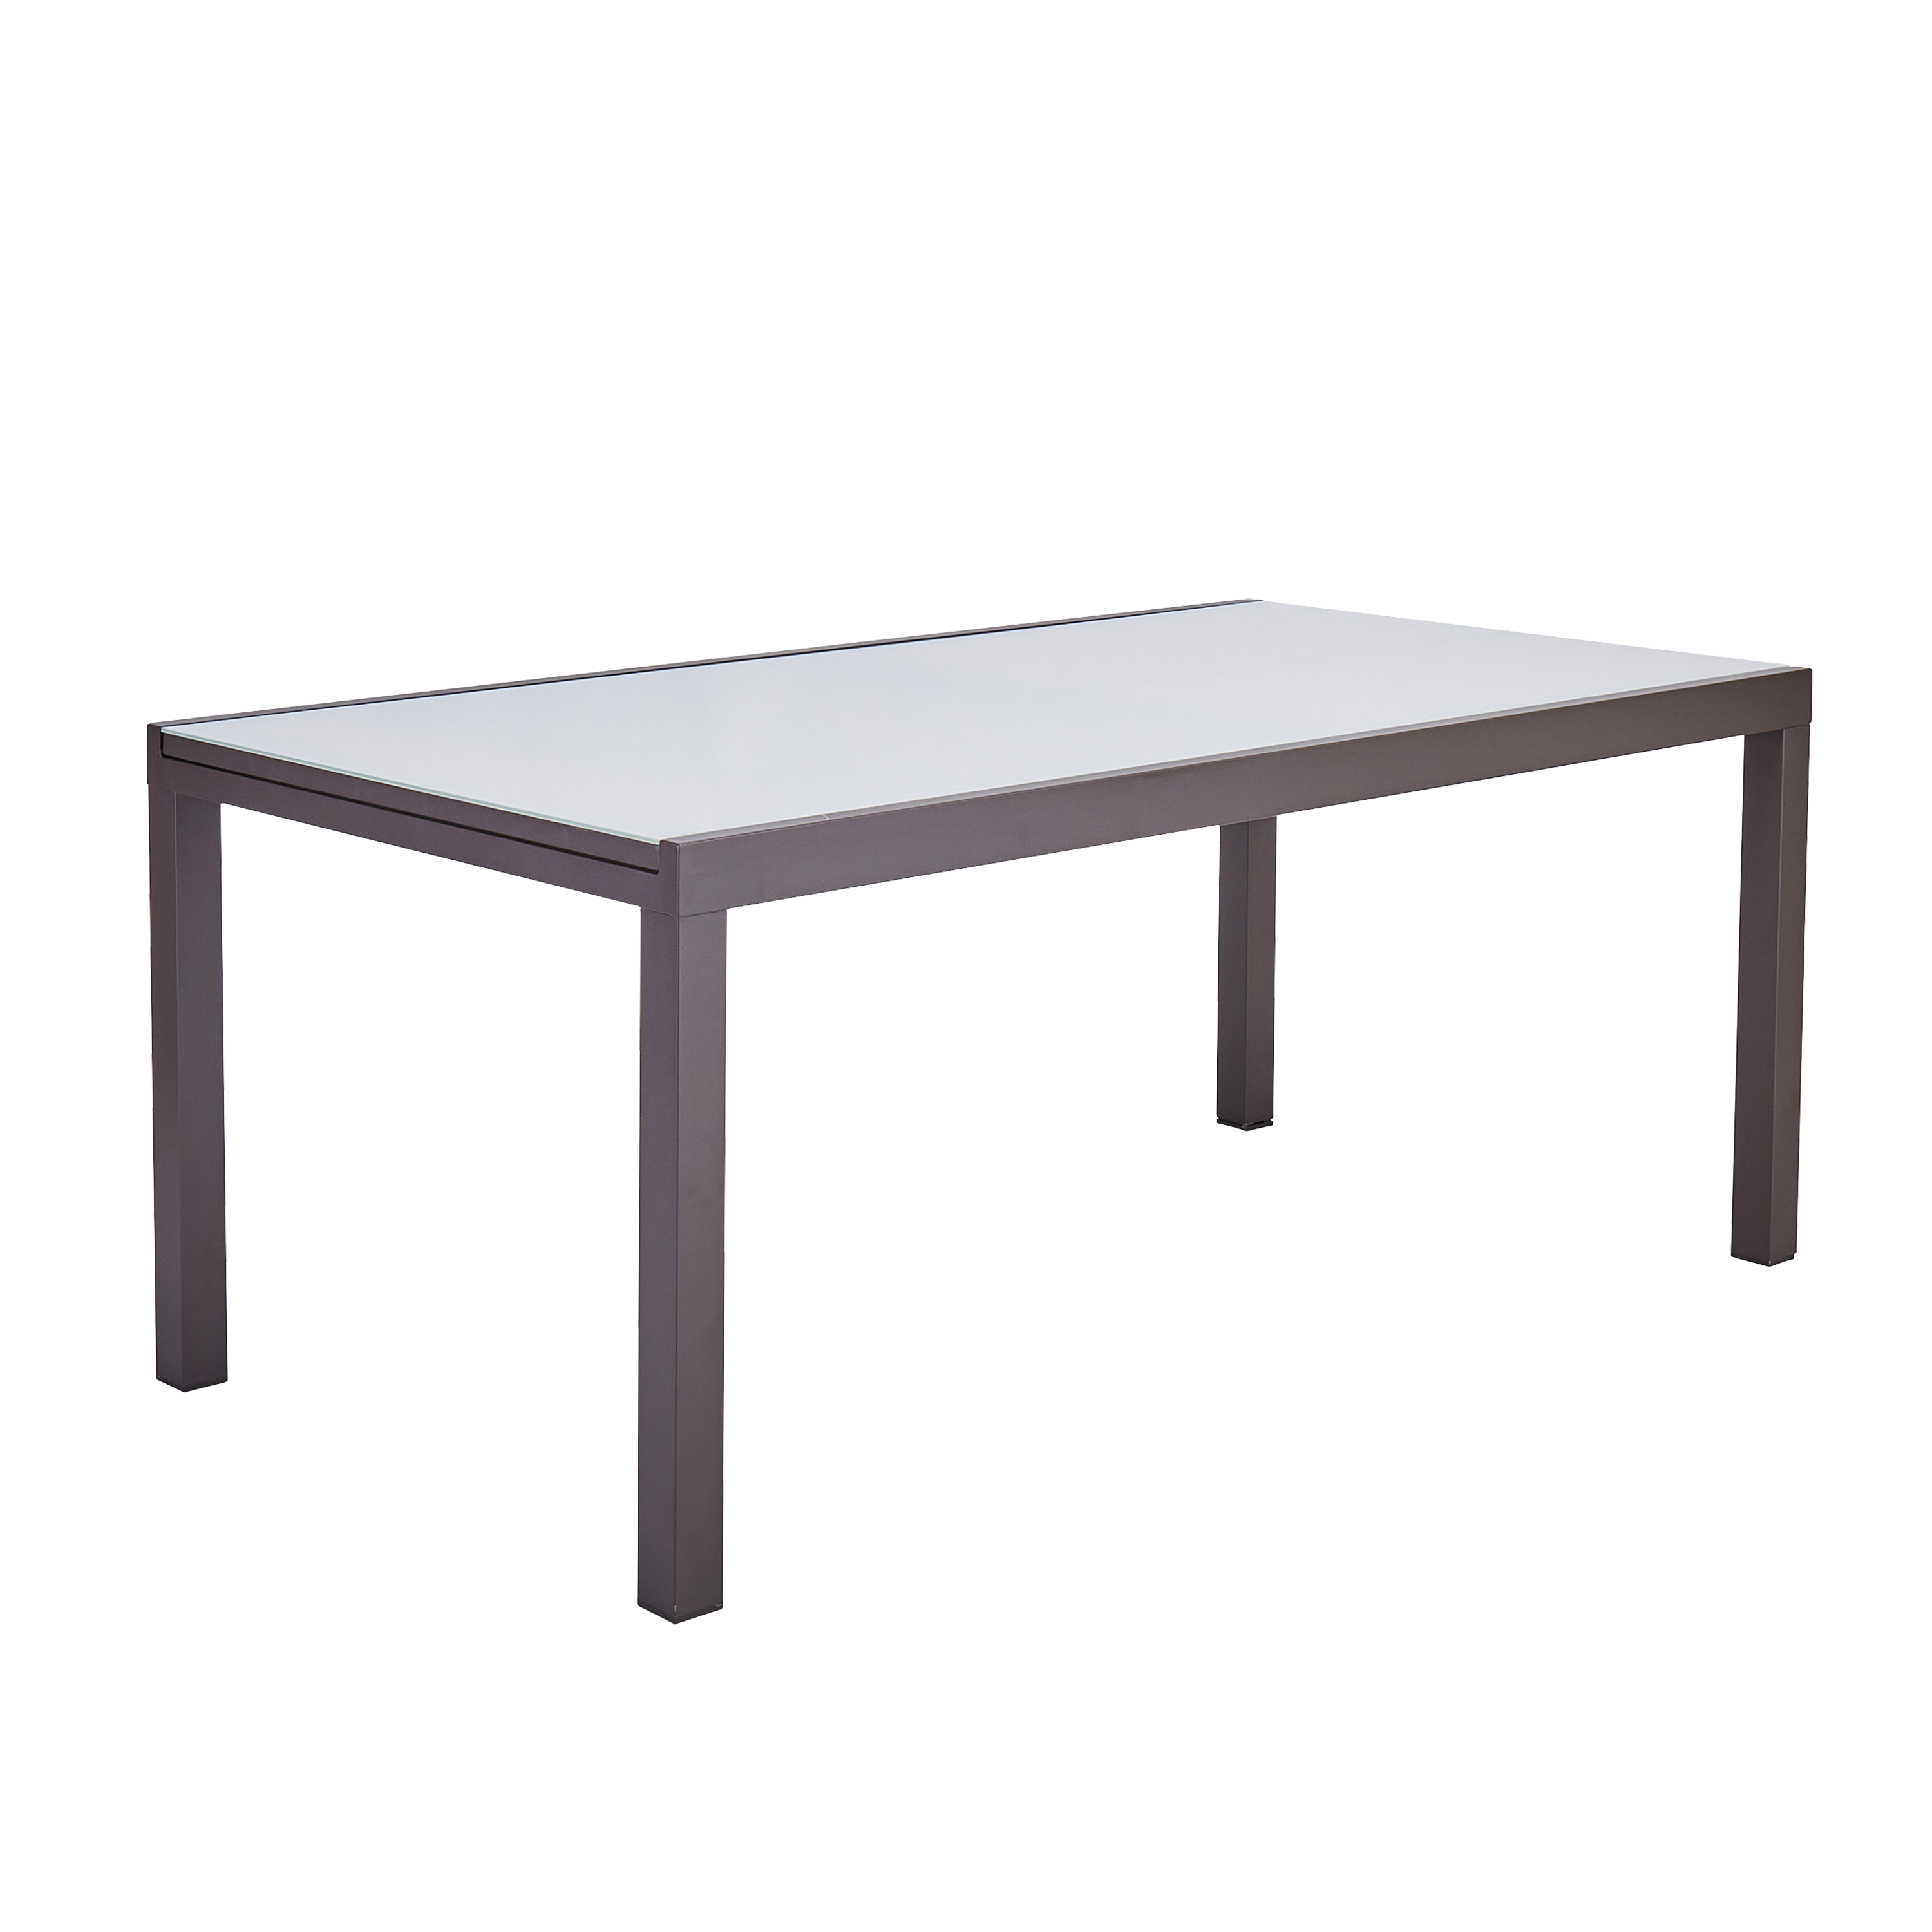 Садовый стол раздвижной Naterial Lyra II 1880 см 180/260x96x75 алюминий/стекло мокко